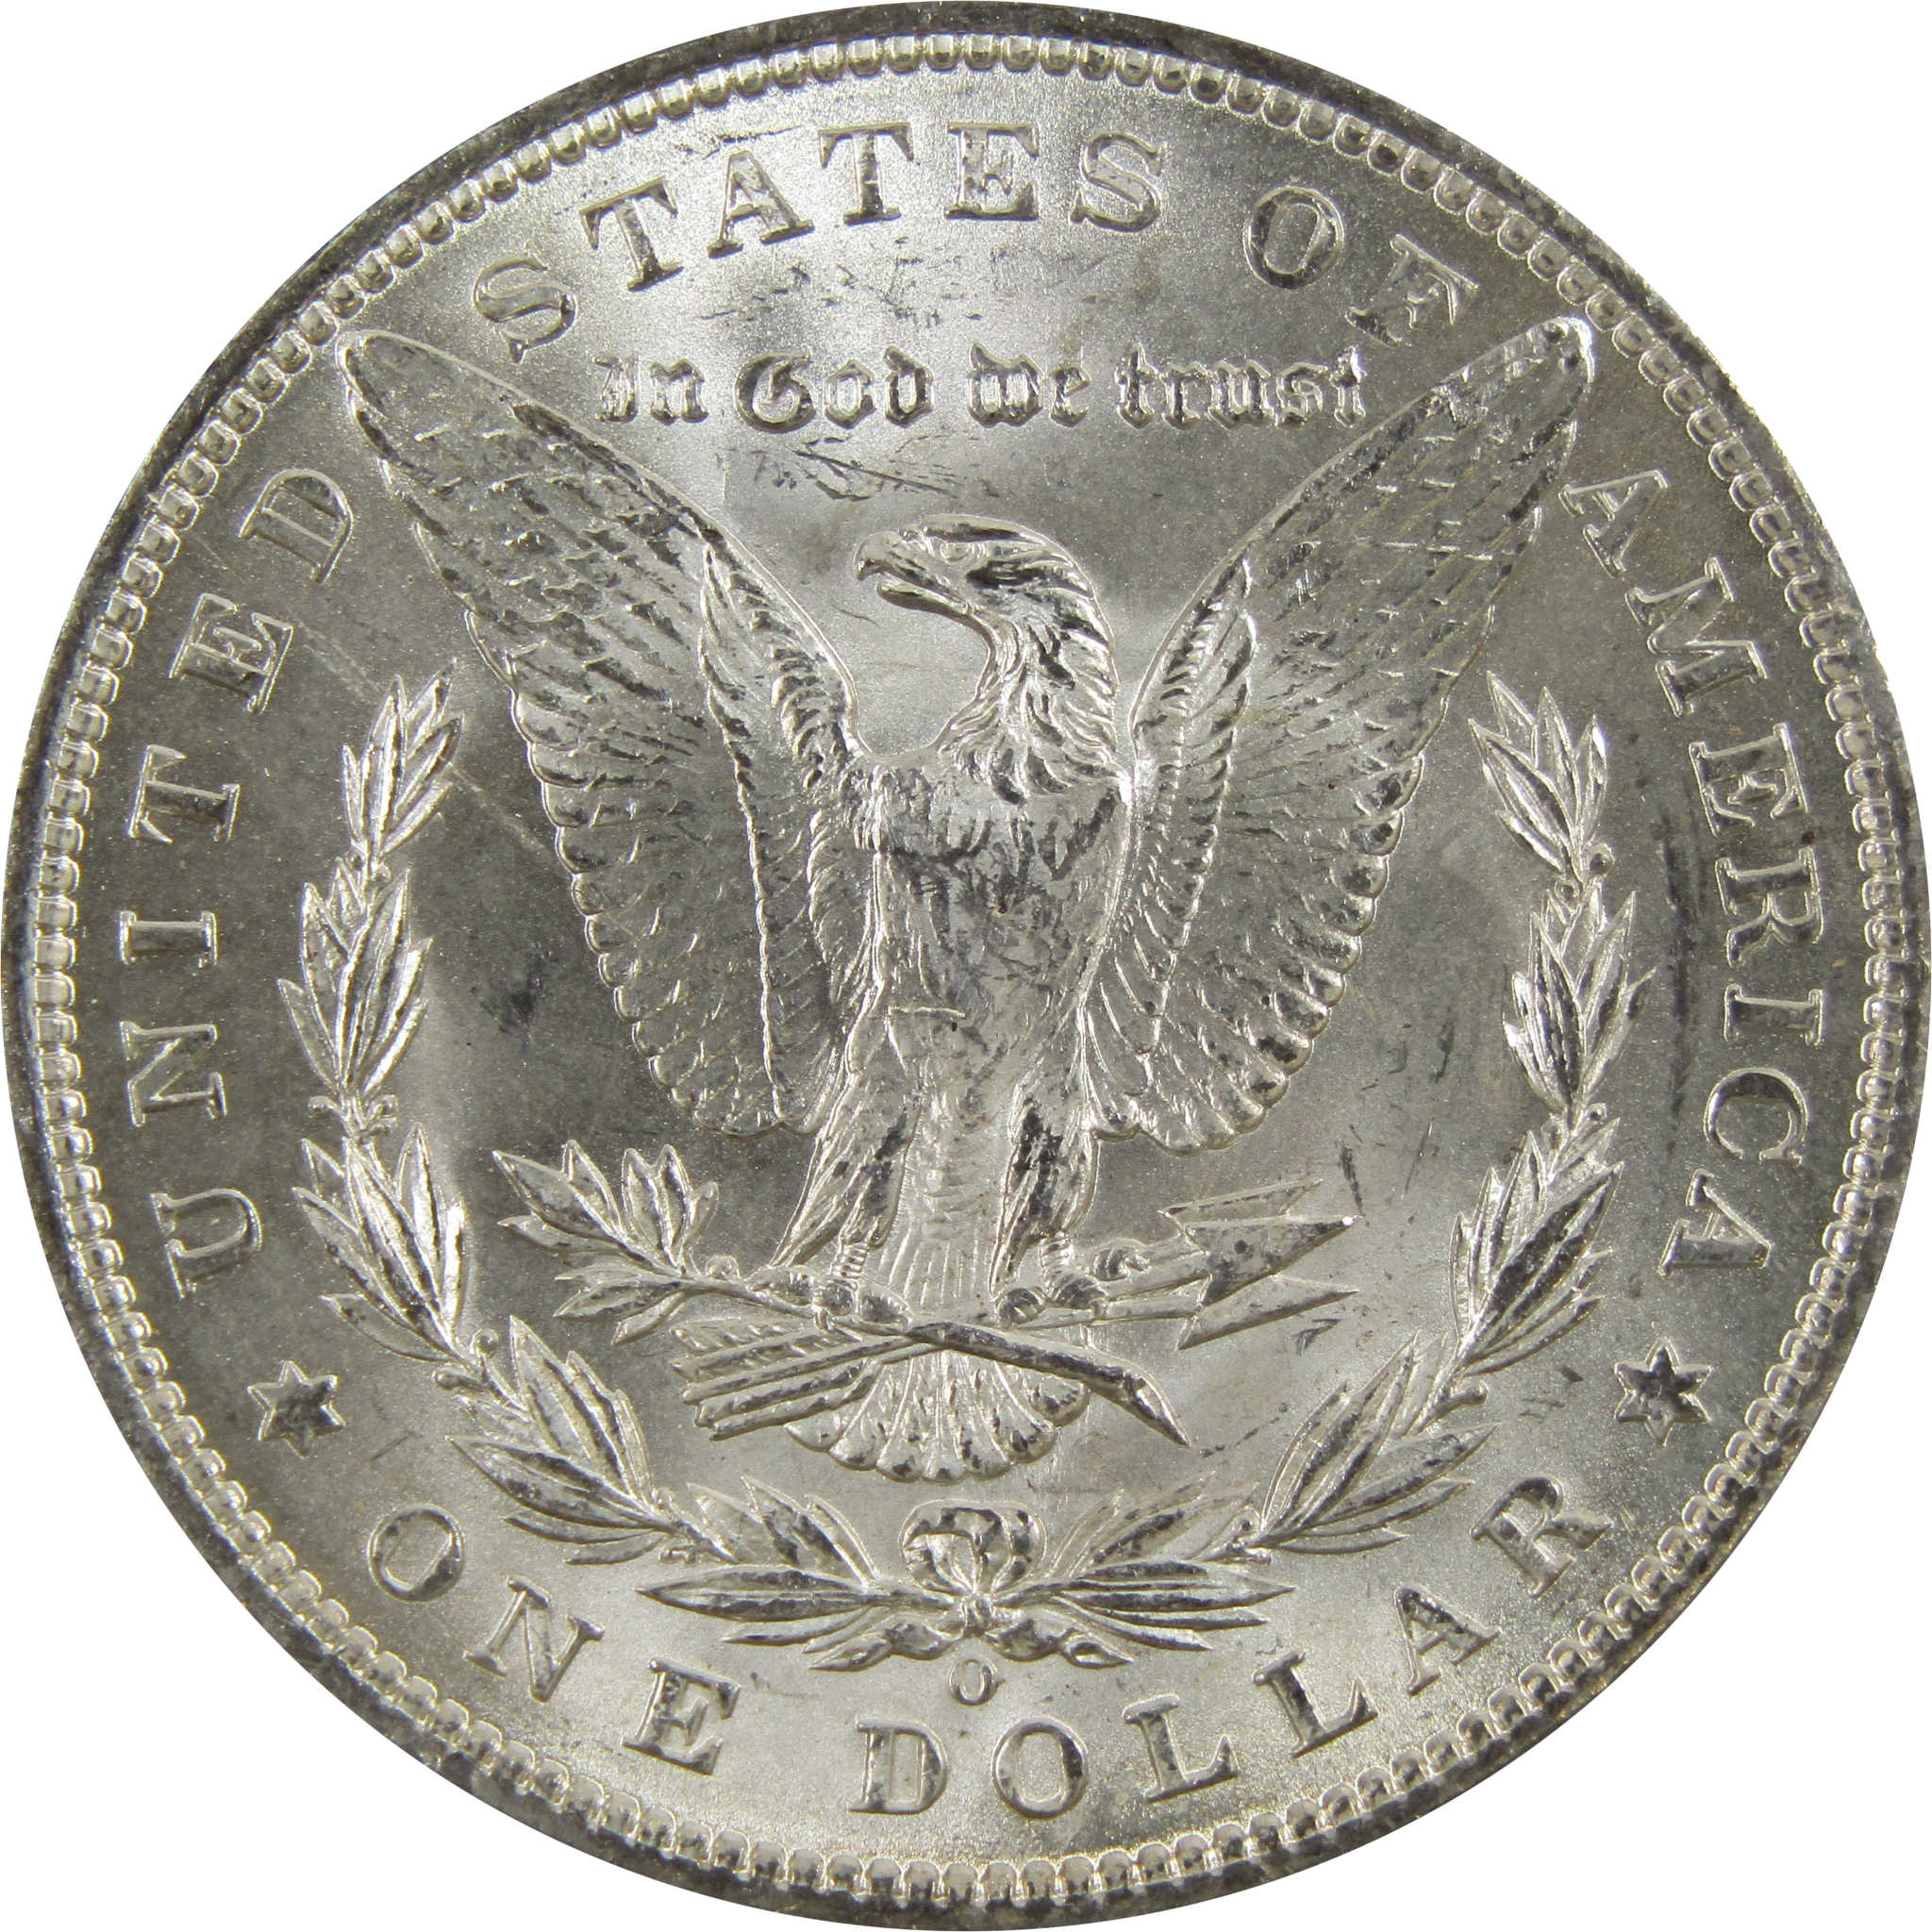 1898 O Morgan Dollar BU Uncirculated 90% Silver $1 Coin SKU:I5226 - Morgan coin - Morgan silver dollar - Morgan silver dollar for sale - Profile Coins &amp; Collectibles